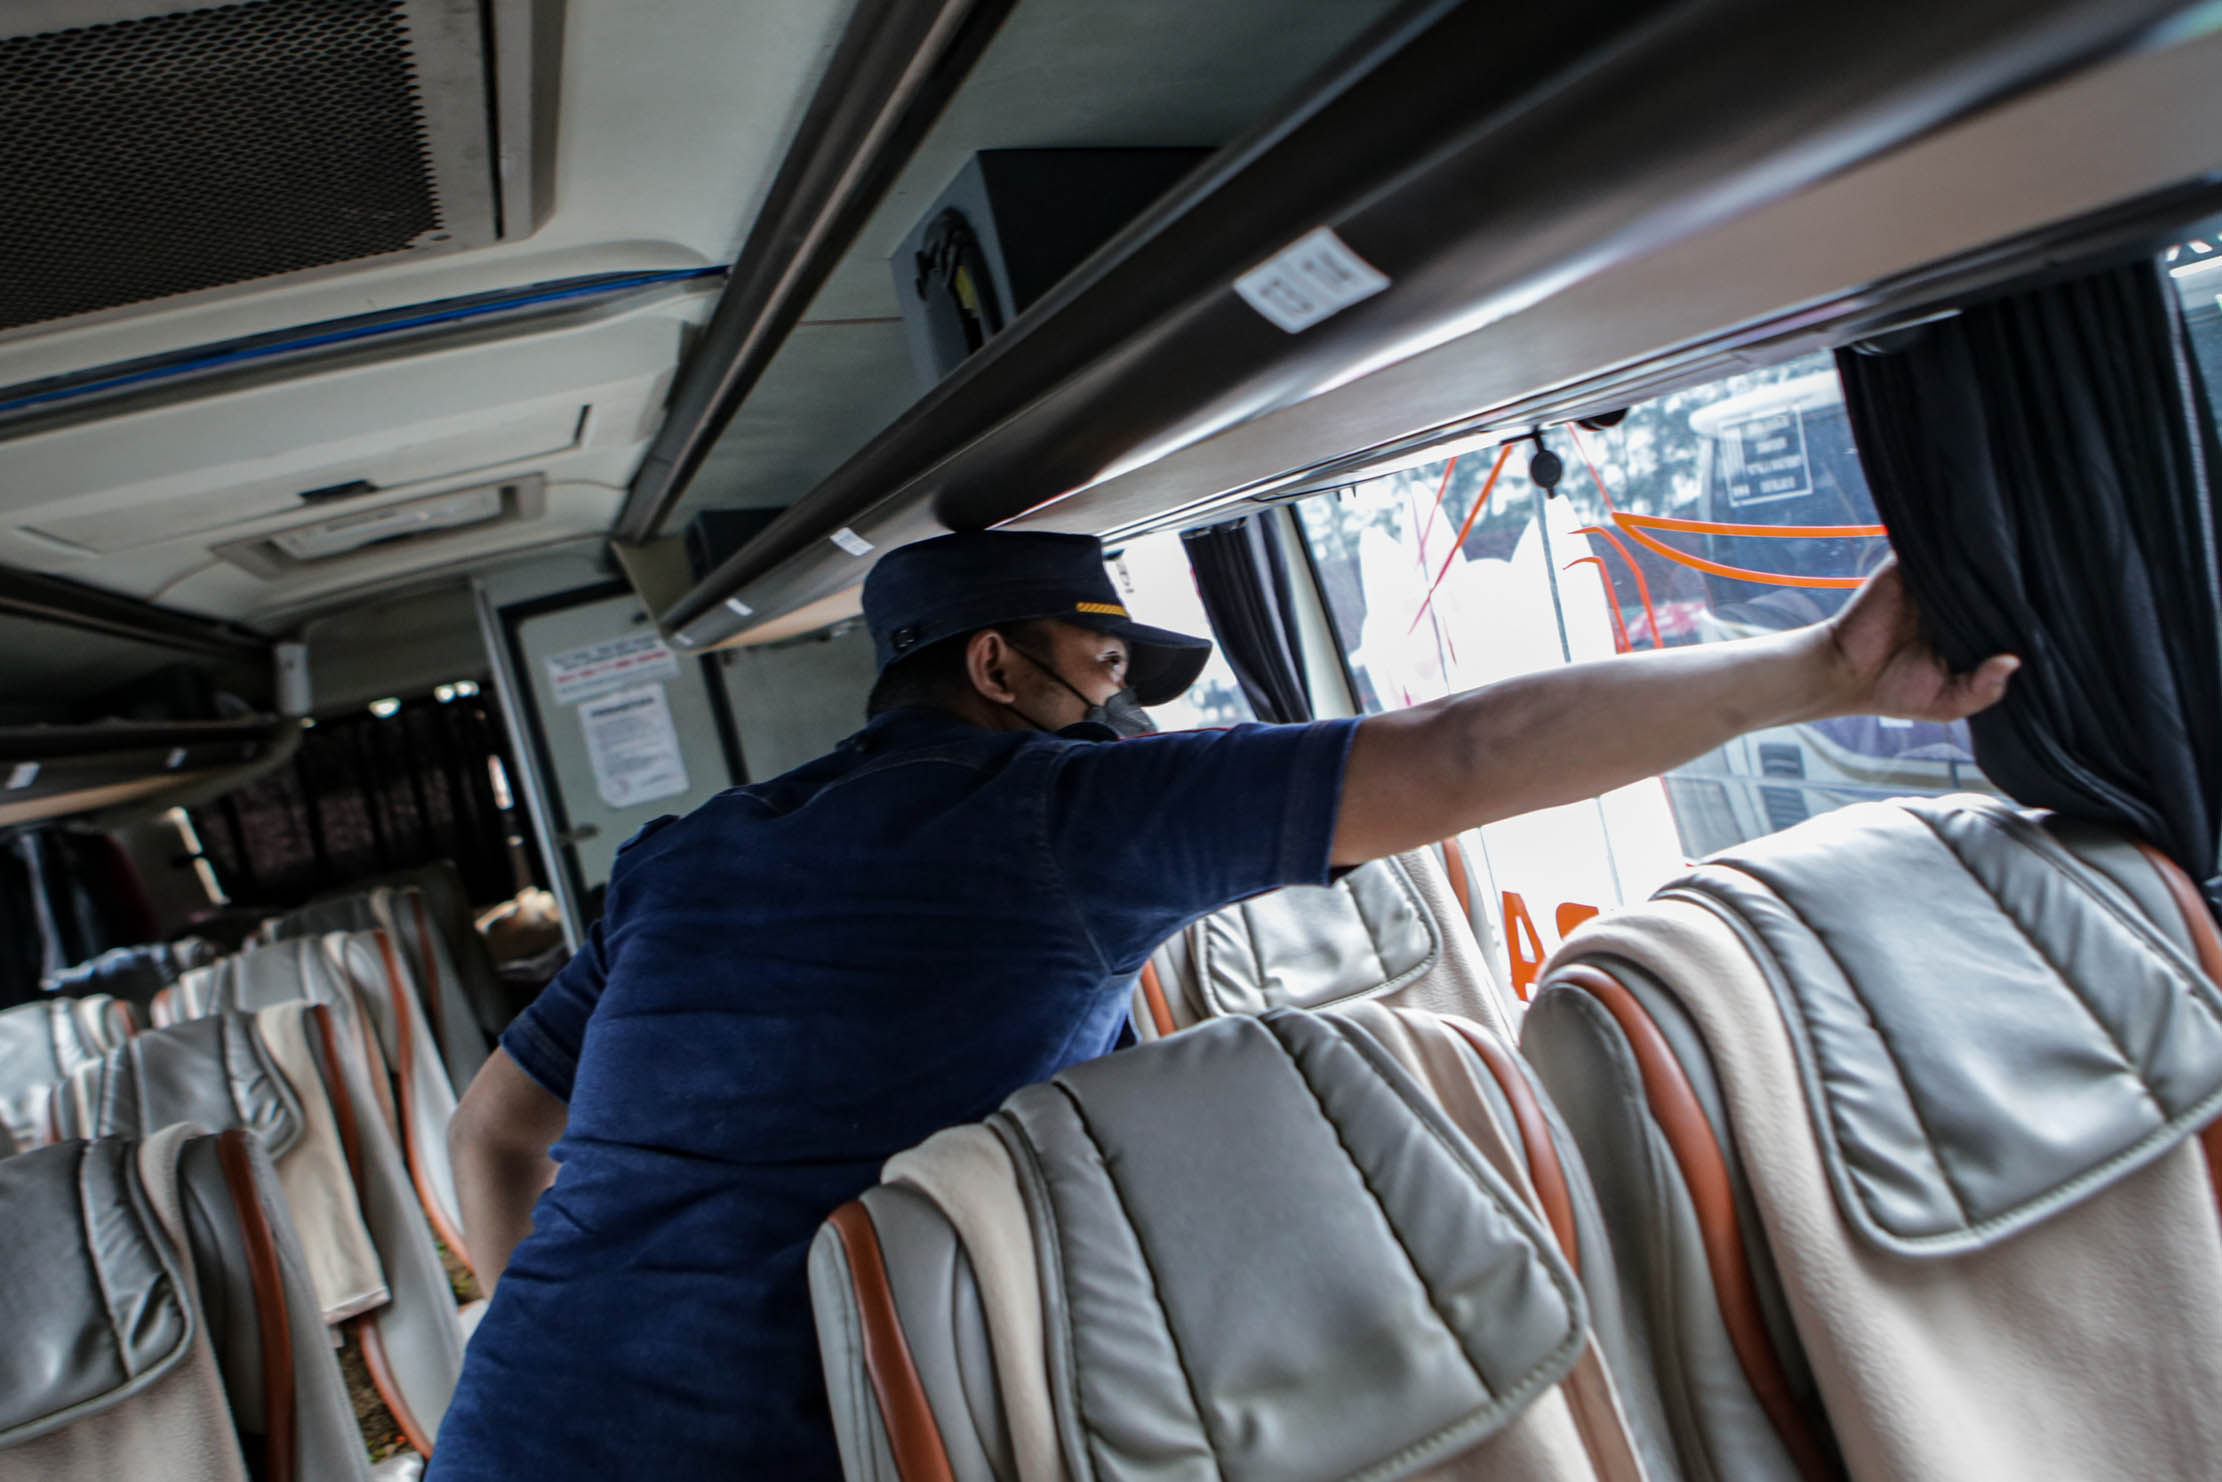 Petugas melihat kondisi angkutan bus saat pemeriksaan kelayakan kendaraan (ramp check) jelang mudik Lebaran di Terminal Poris Plawad, Kota Tangerang, Banten, Senin 18 April 2022. Foto : Panji Asmoro/TrenAsia